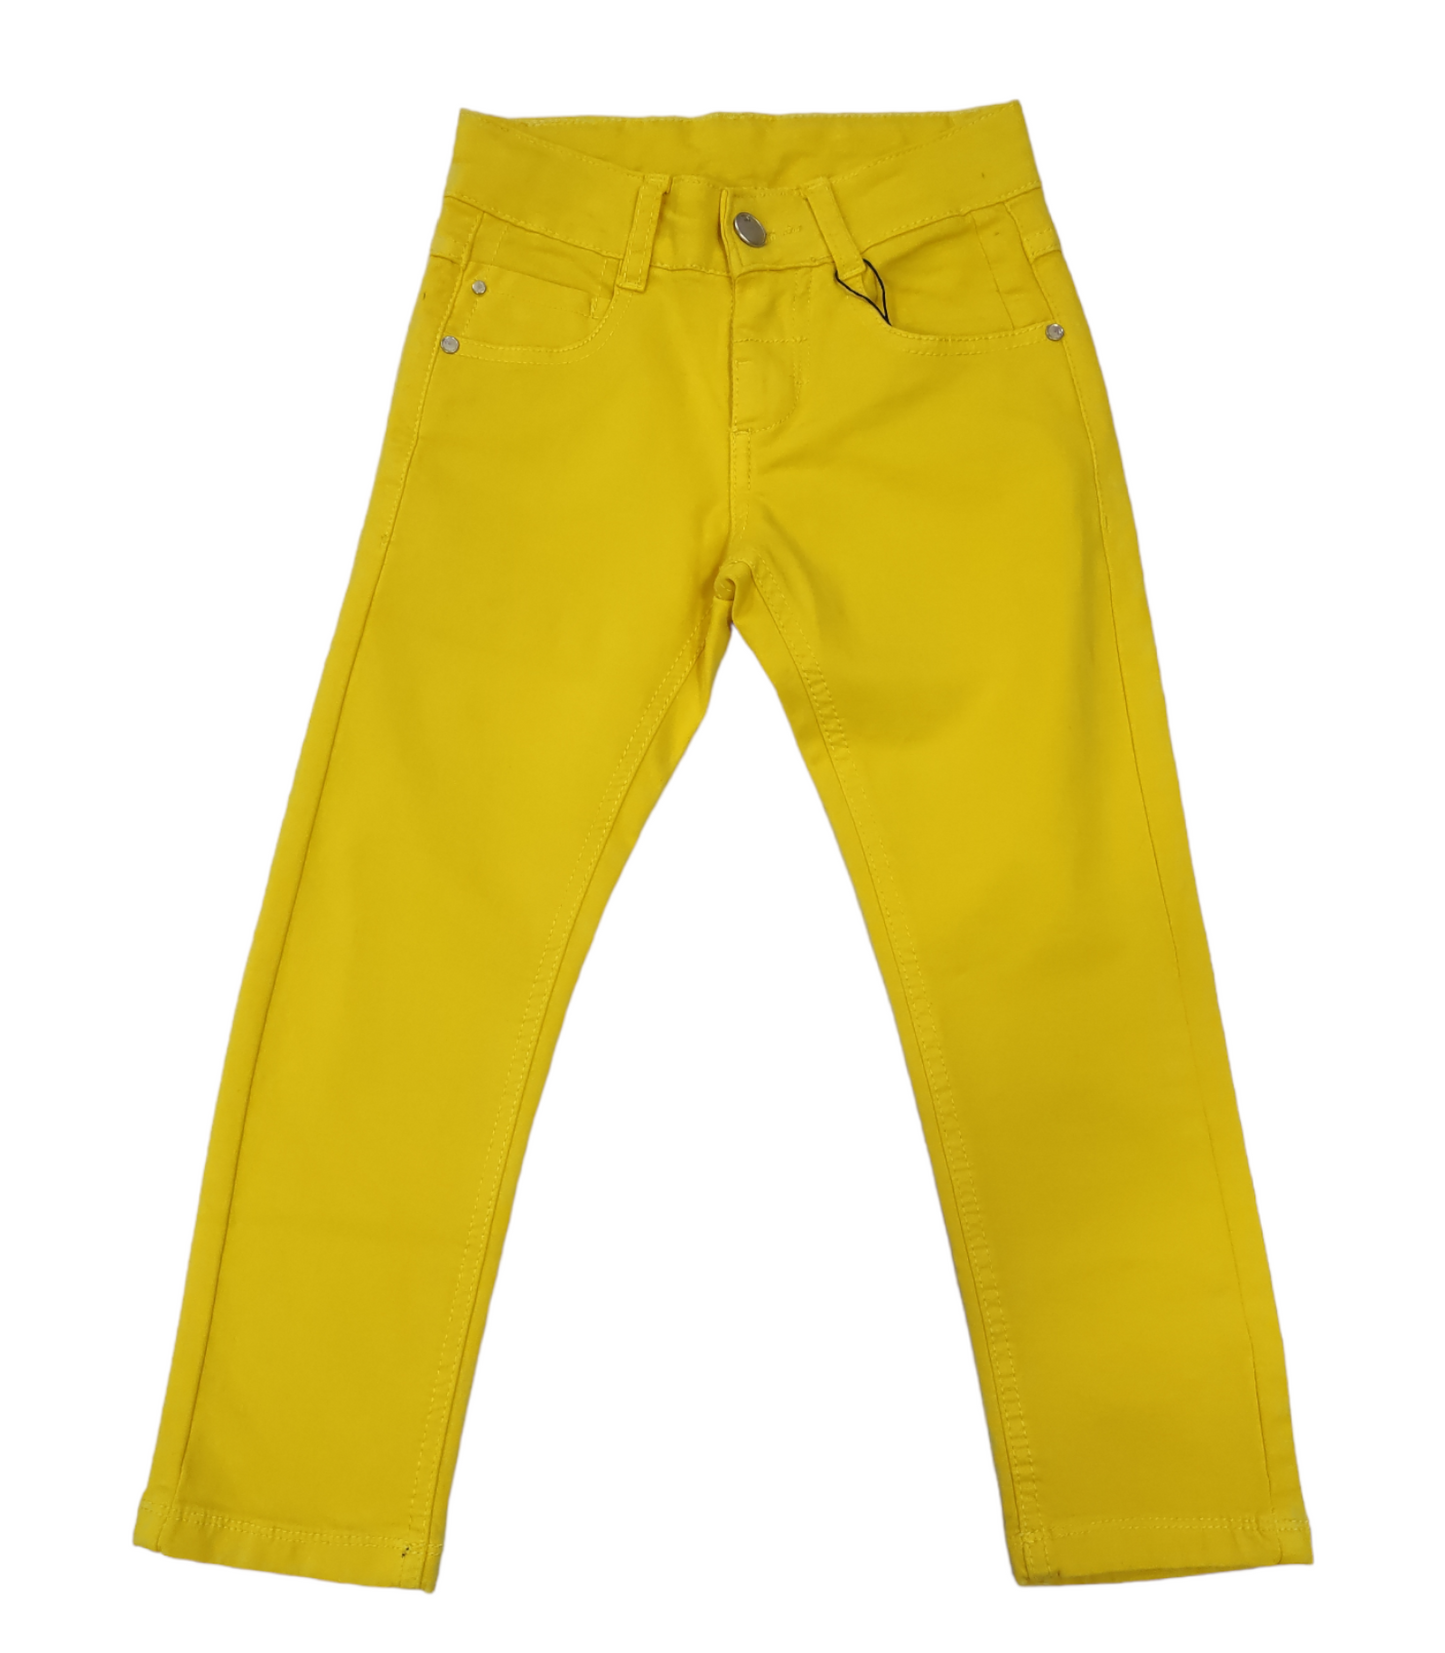 Pantalone Jeans in Cotone Colorato Giallo Primaverile Bambino 4-16 Anni